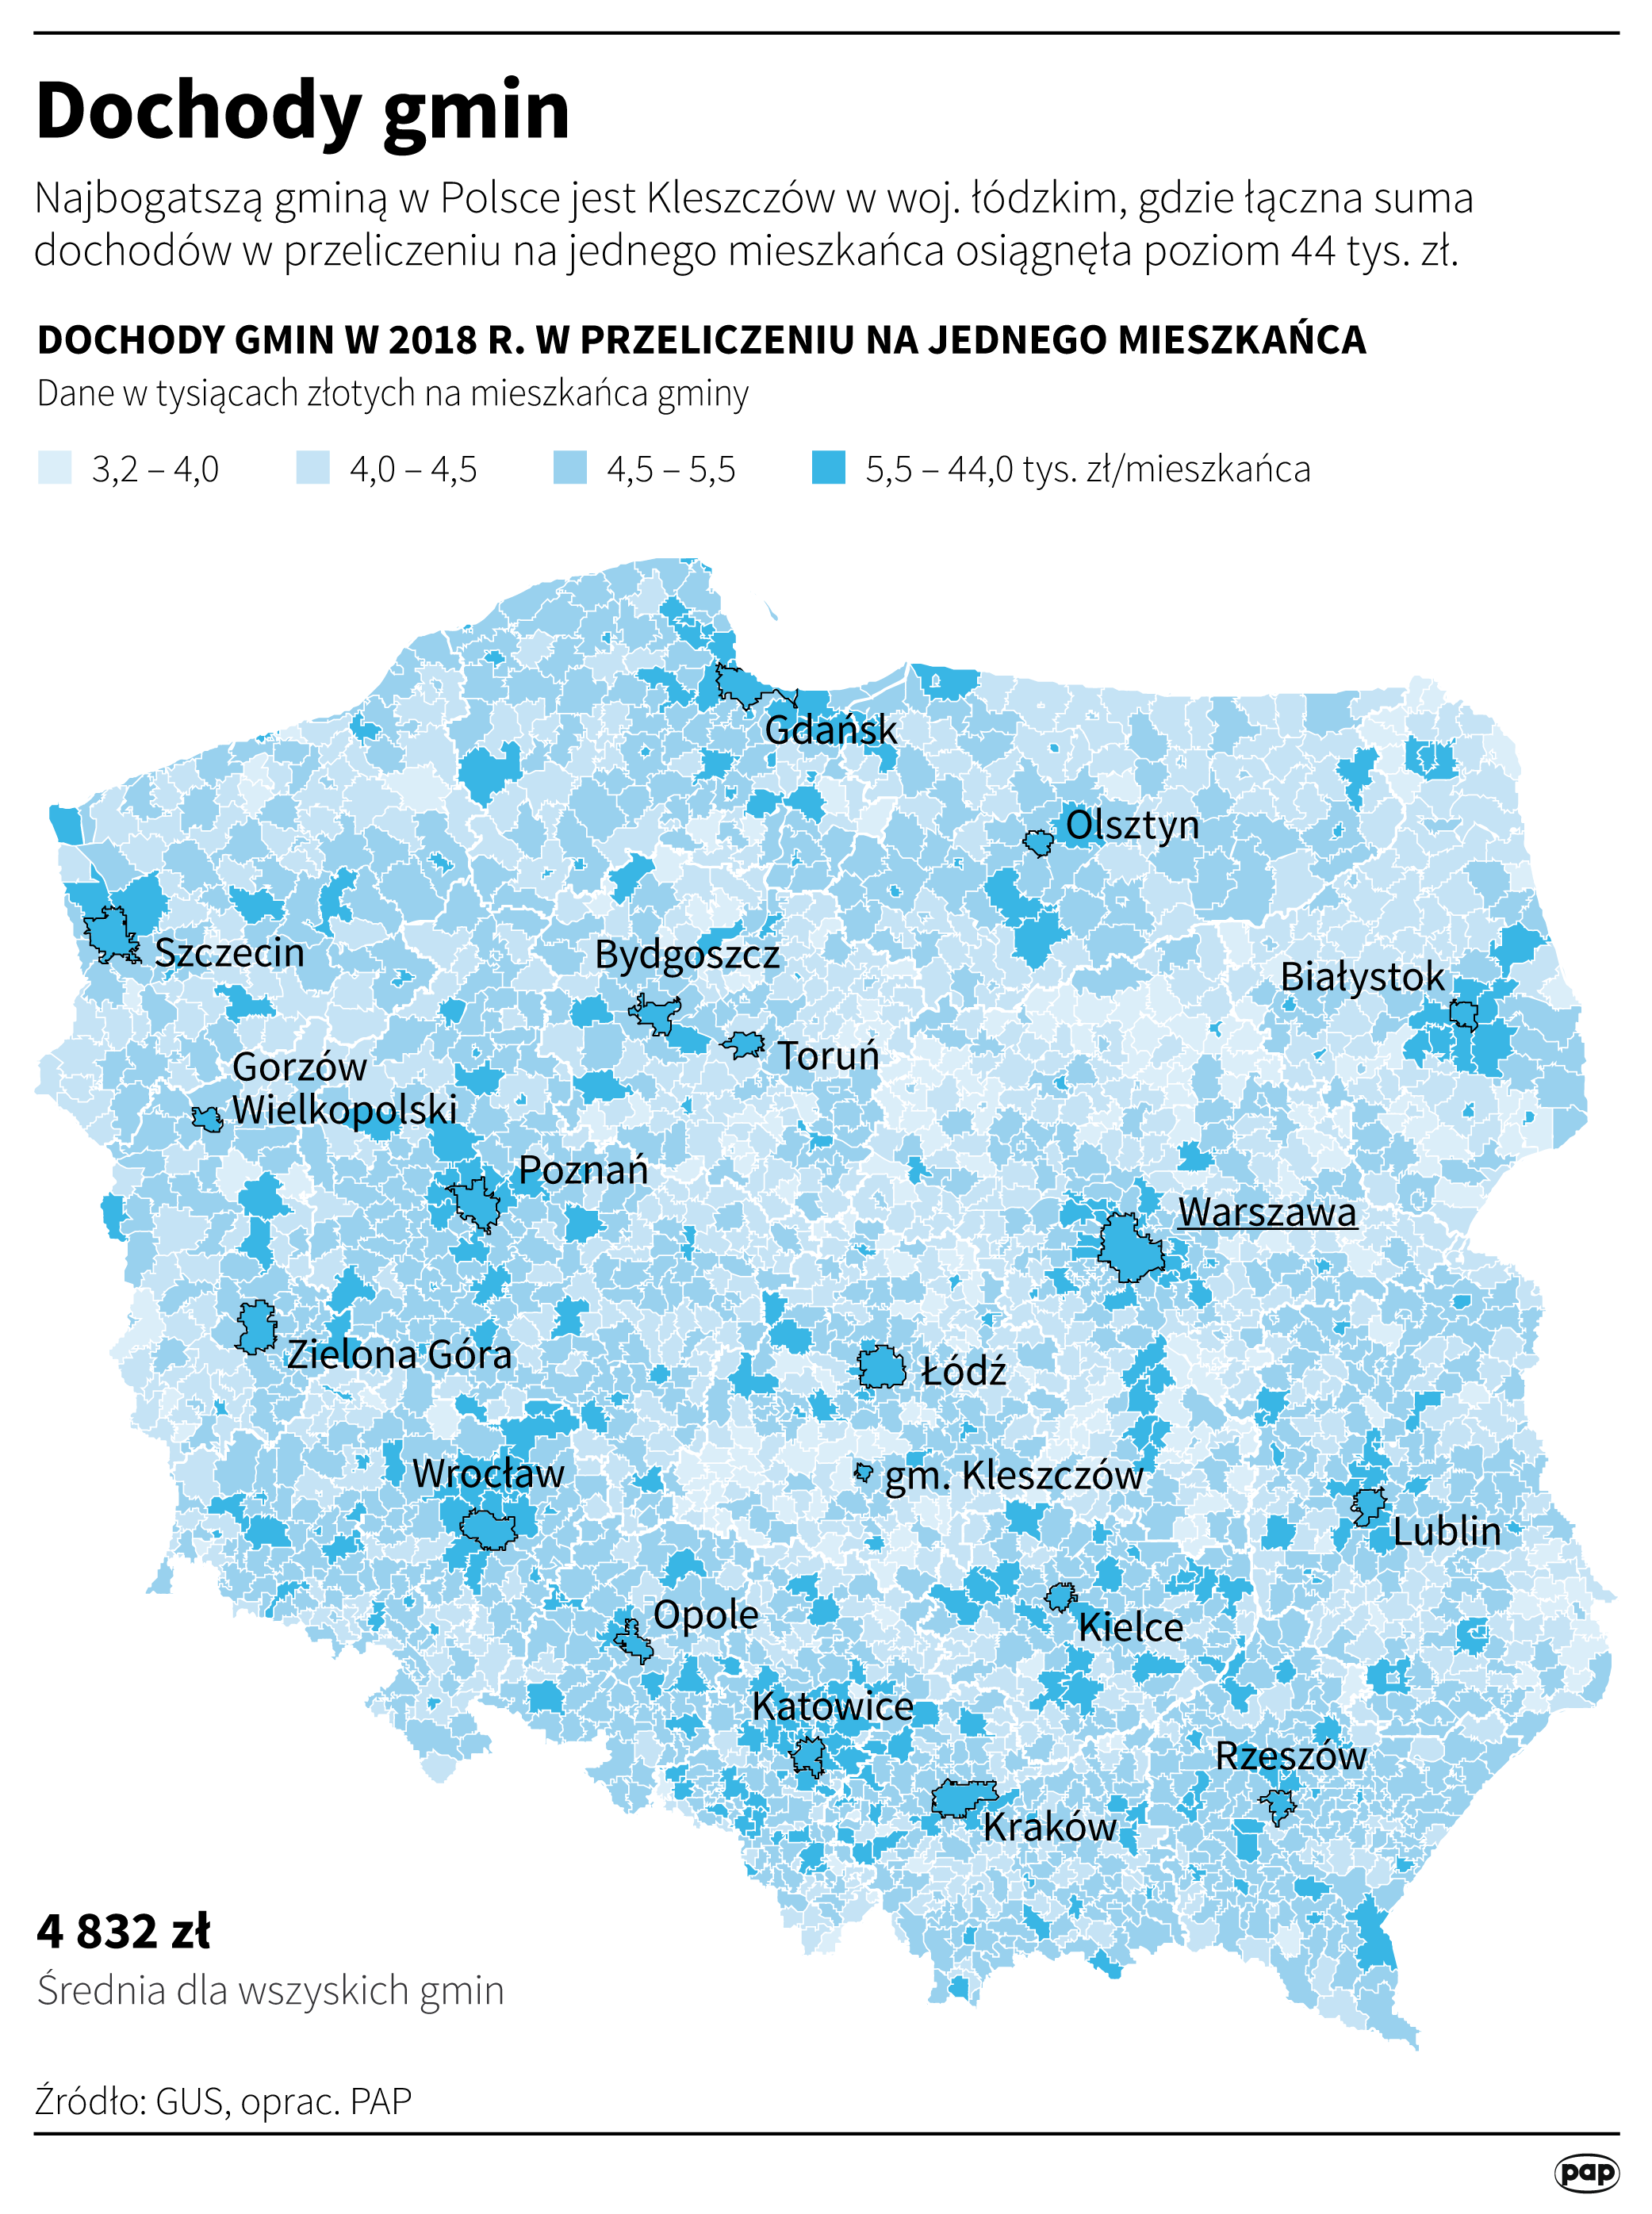 Kleszczów - najbogatsza gmina w Polsce